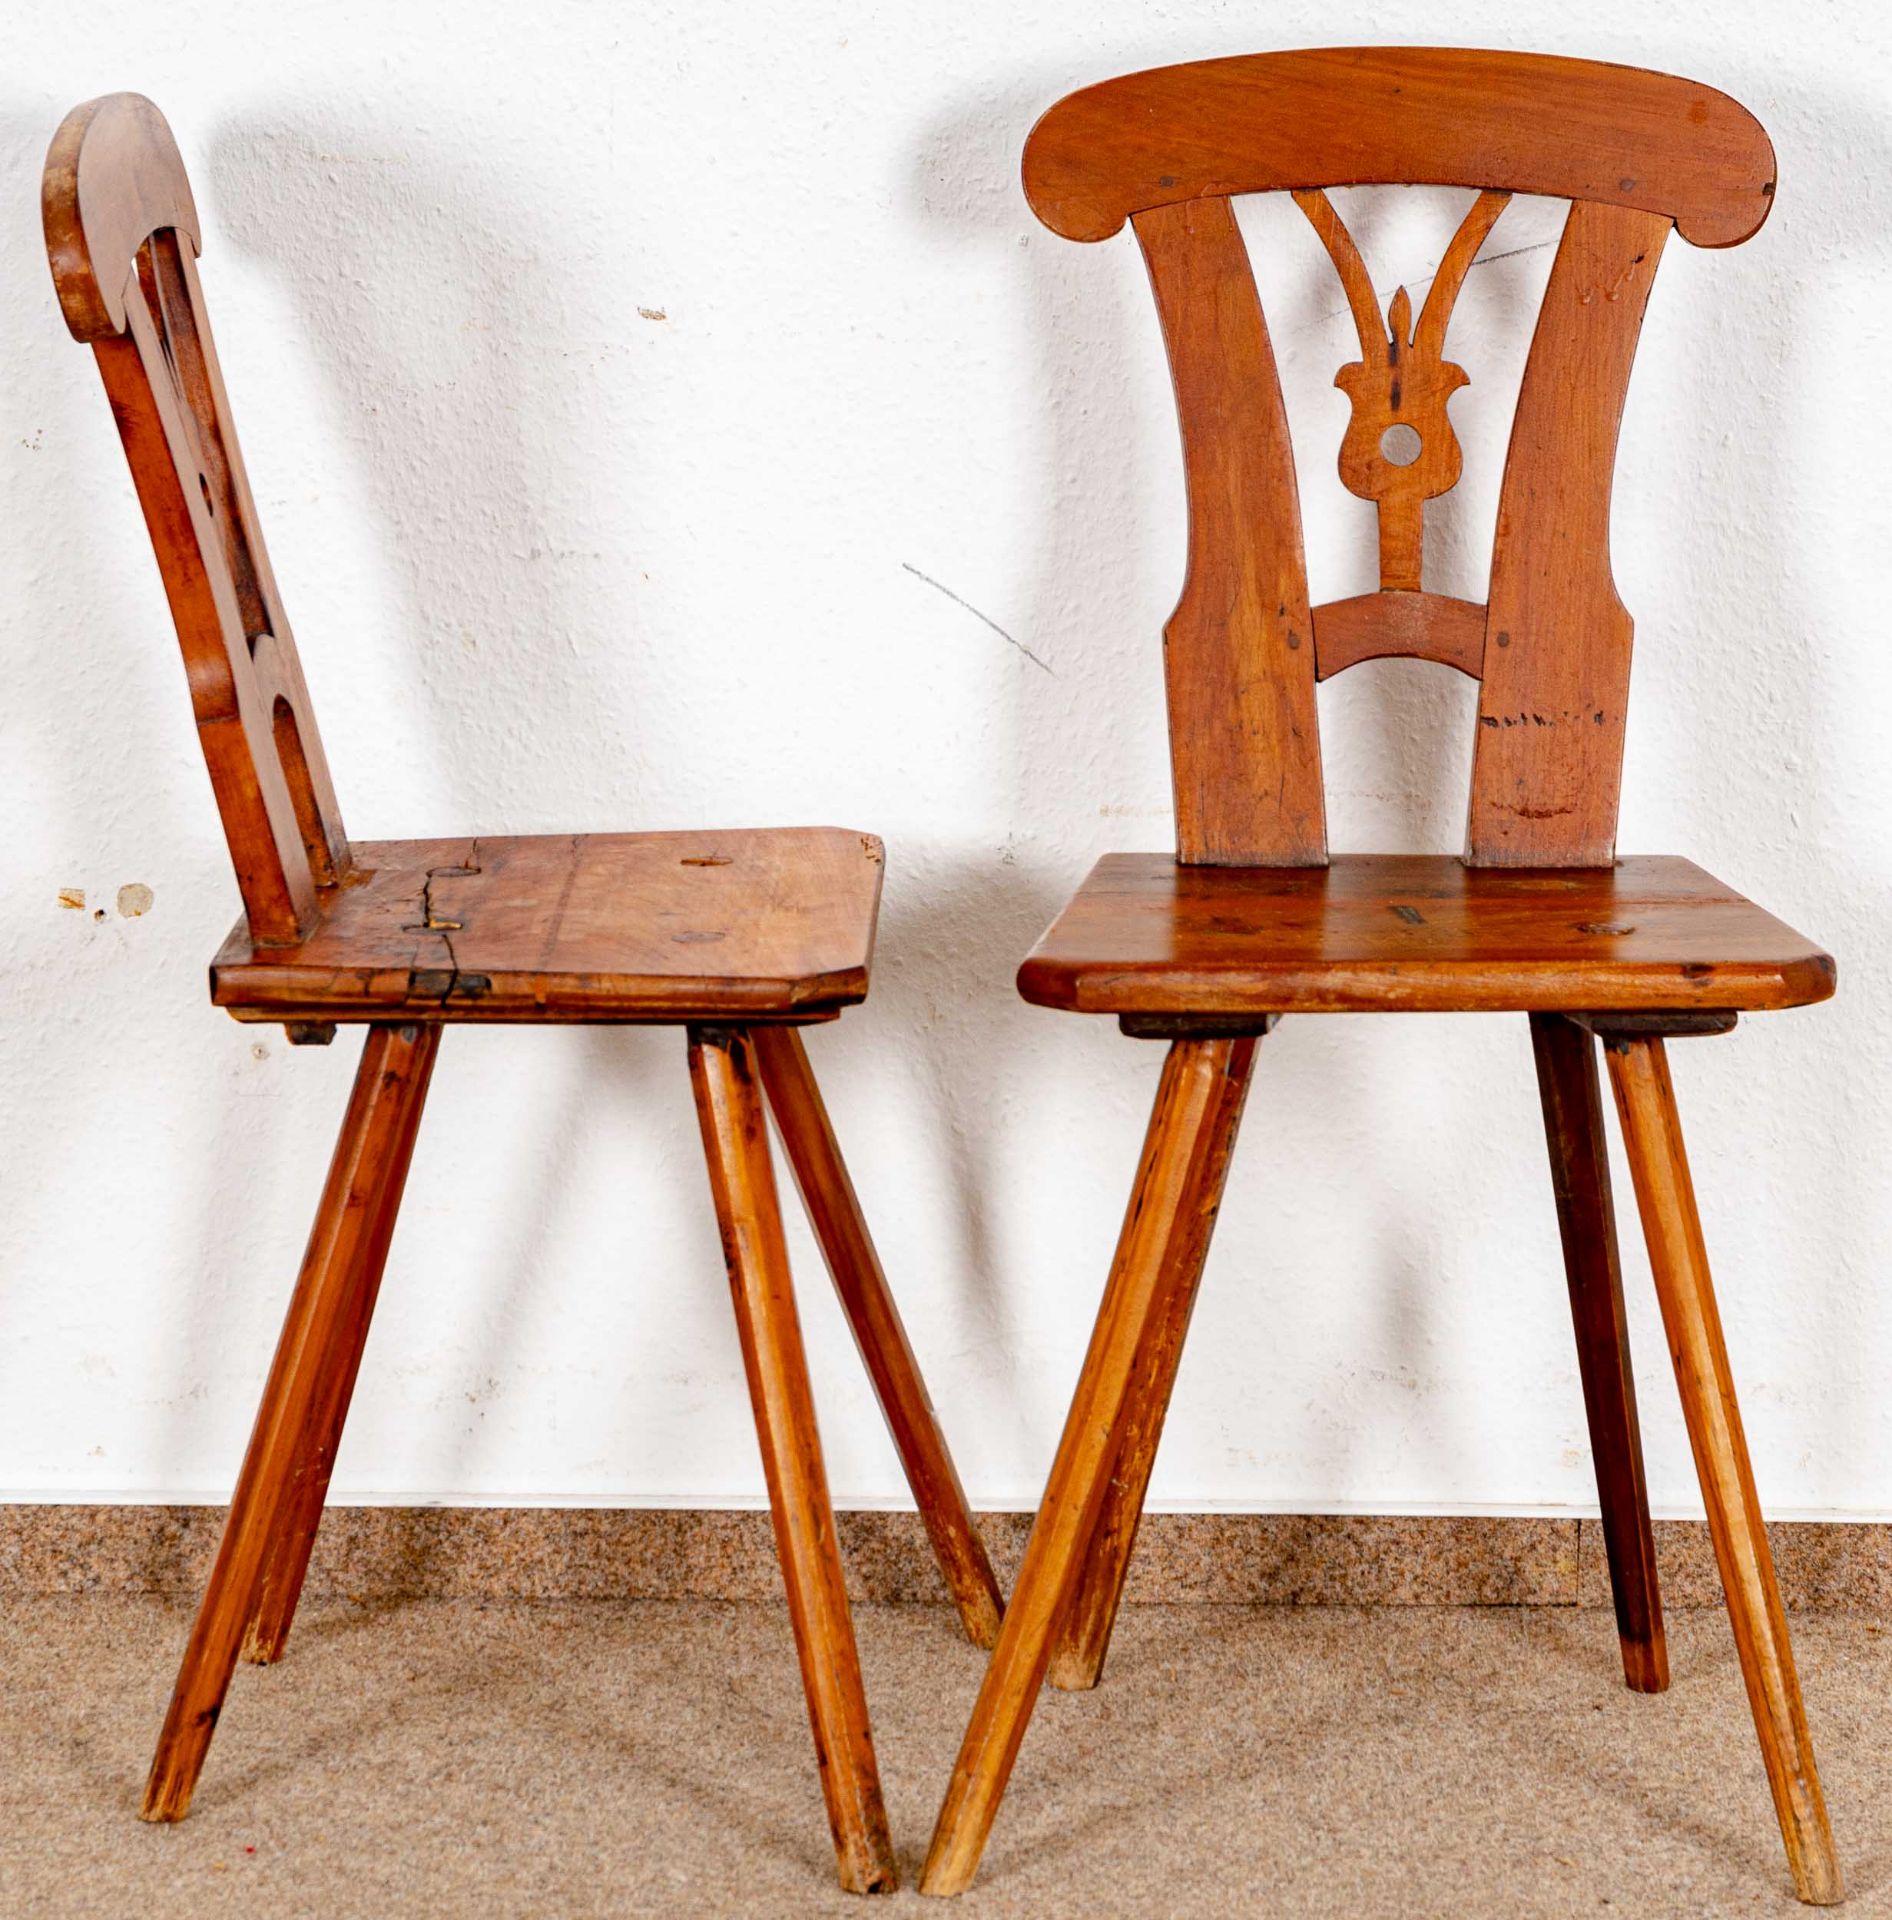 Paar Brettstühle, alpenländisch/süddeutsch, 19. Jhdt., kirschbaumfarbene Harthölzer; ältere Überarb - Bild 2 aus 4